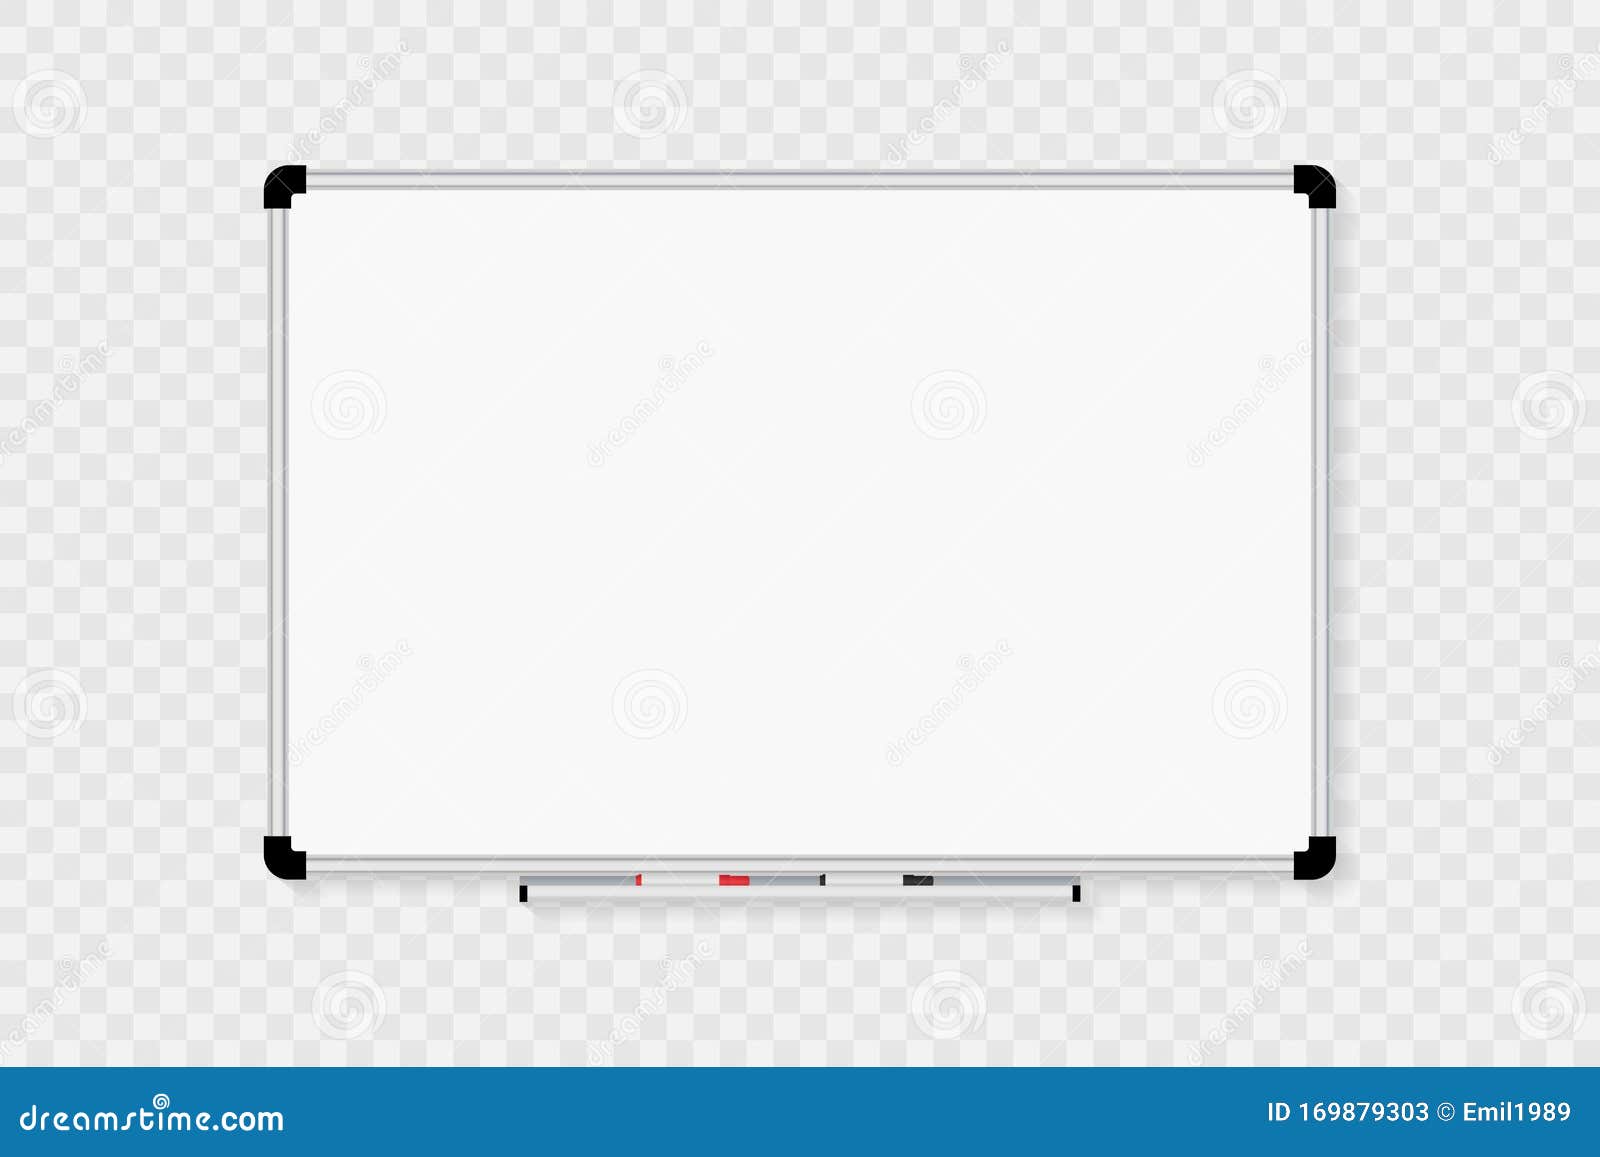 透明背景中隔离的白板向量例证 插画包括有会议室 教育 国界的 设计 背包 空白的 凹道